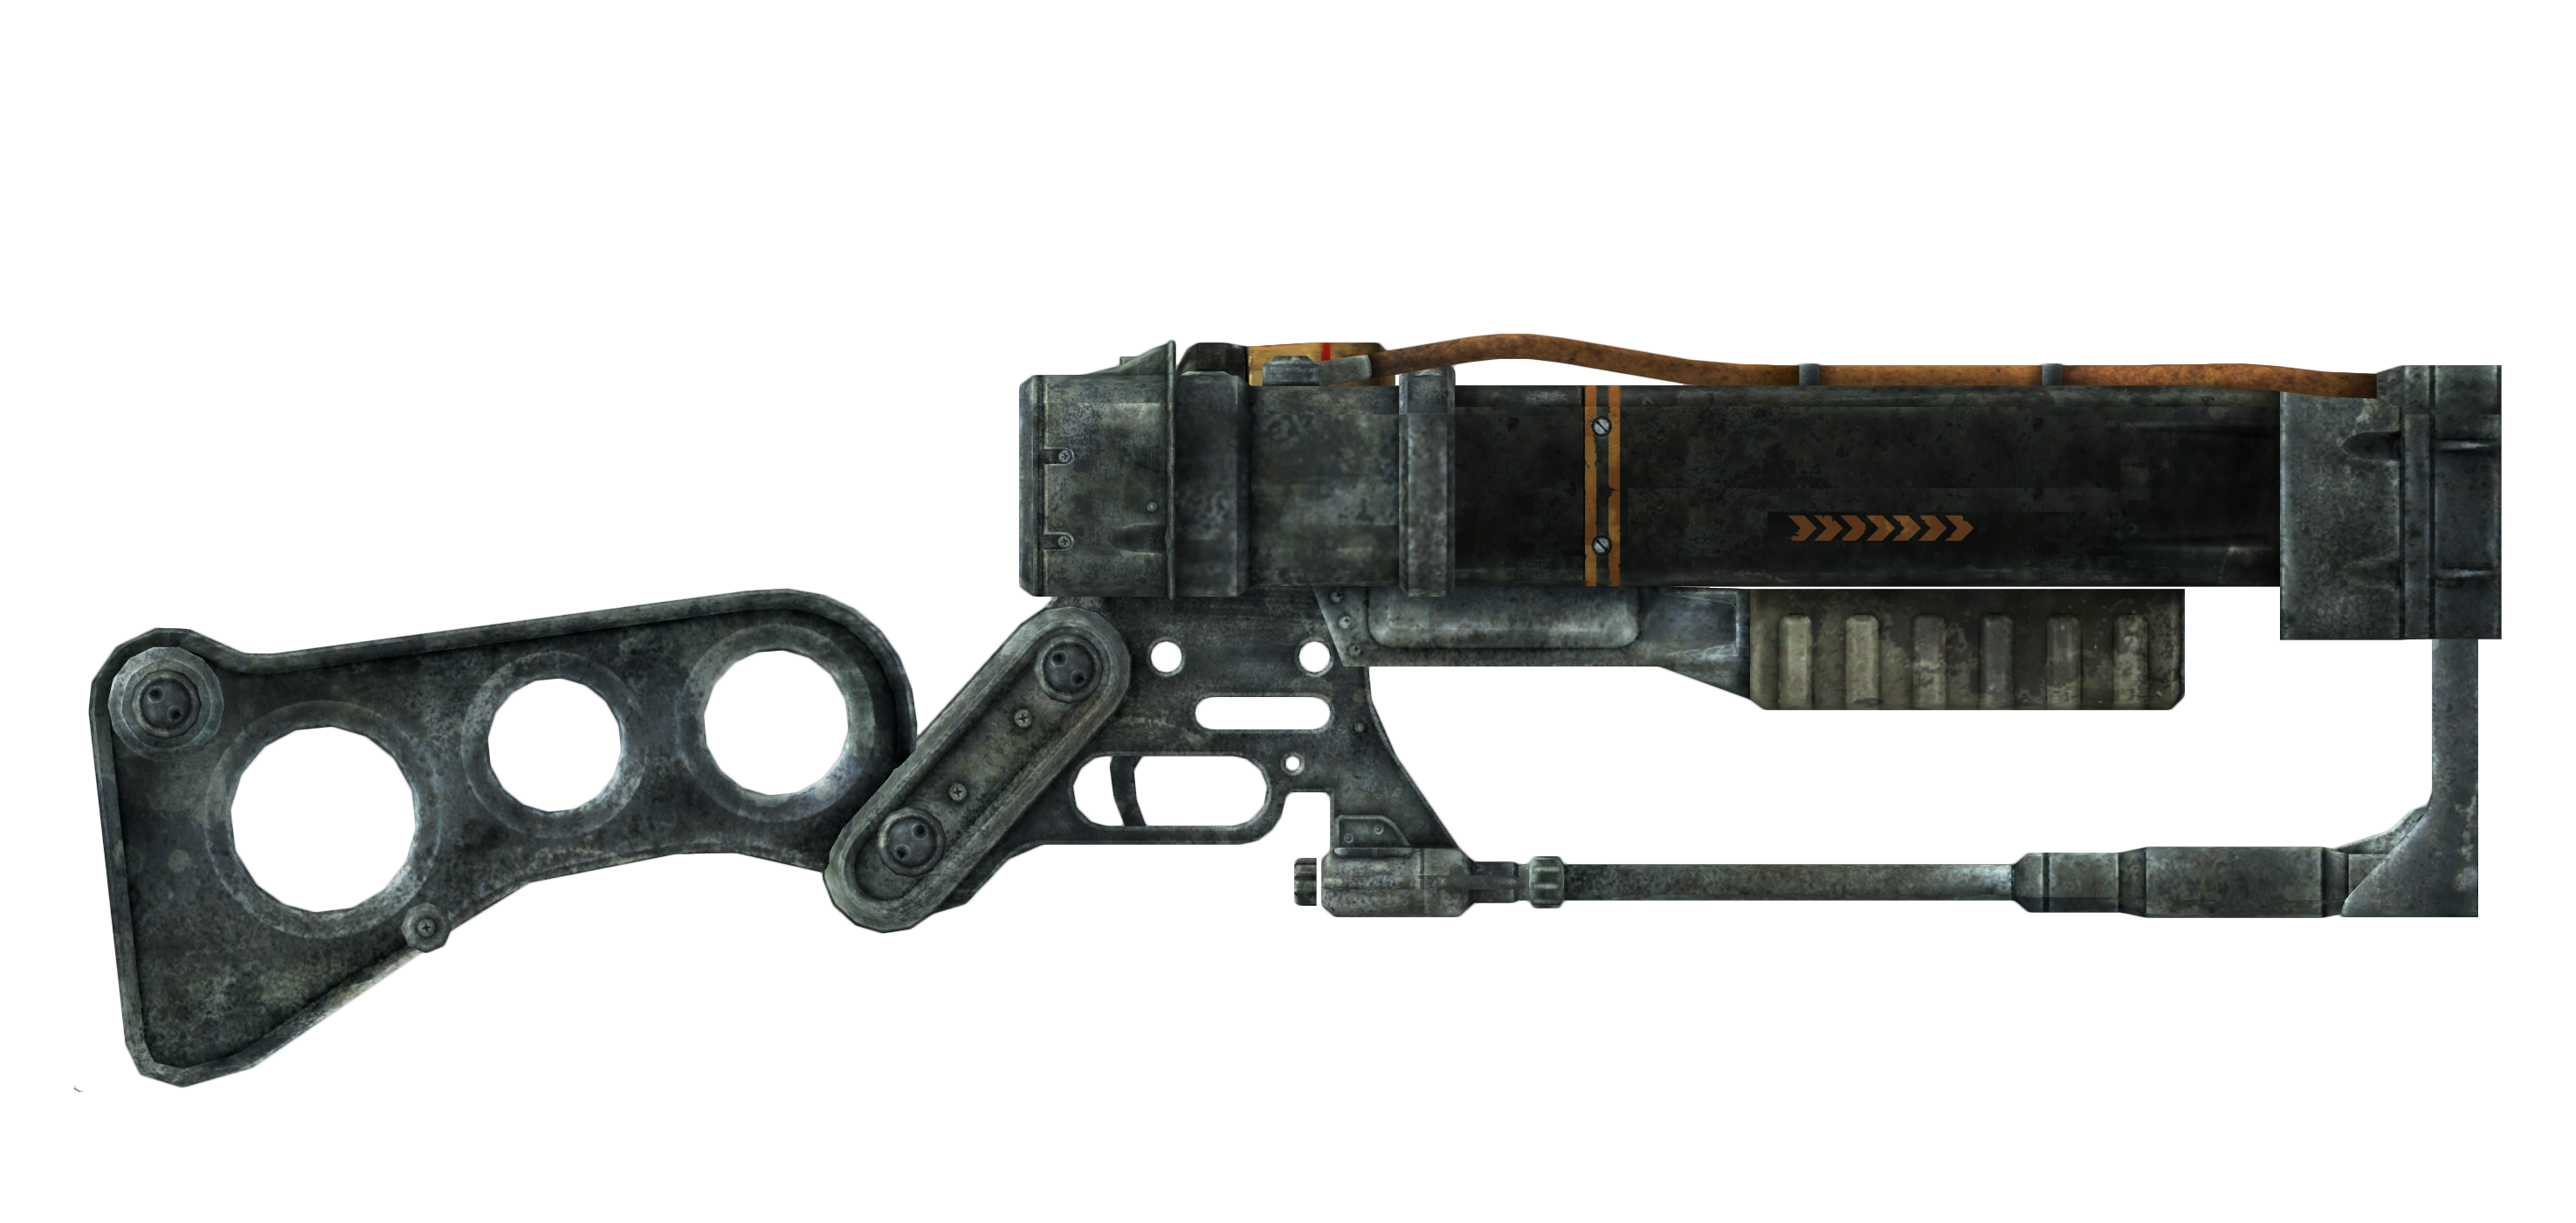 лазерный пистолет из fallout 4 фото 91